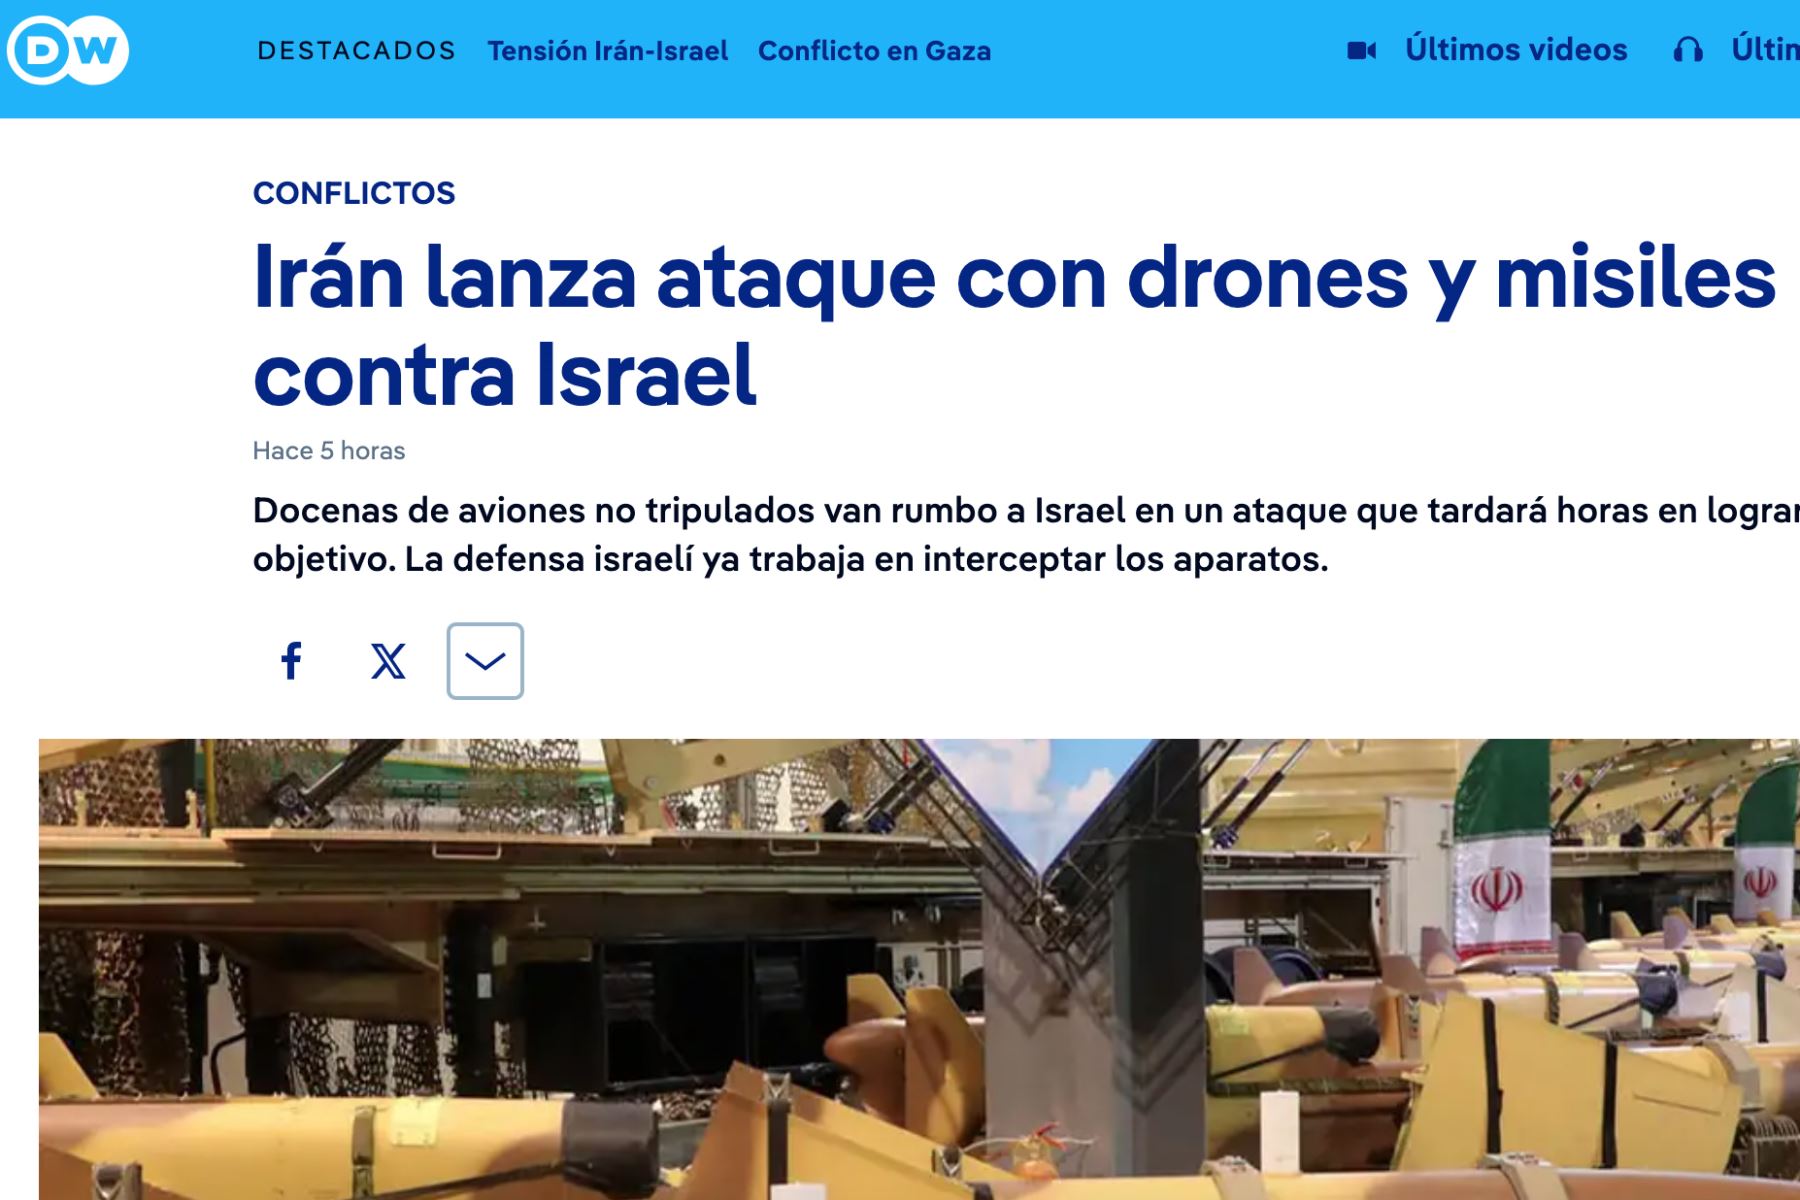 Deutsche Welle. Así informan los medios internacionales acerca del ataque con drones de Irán contra Israel.